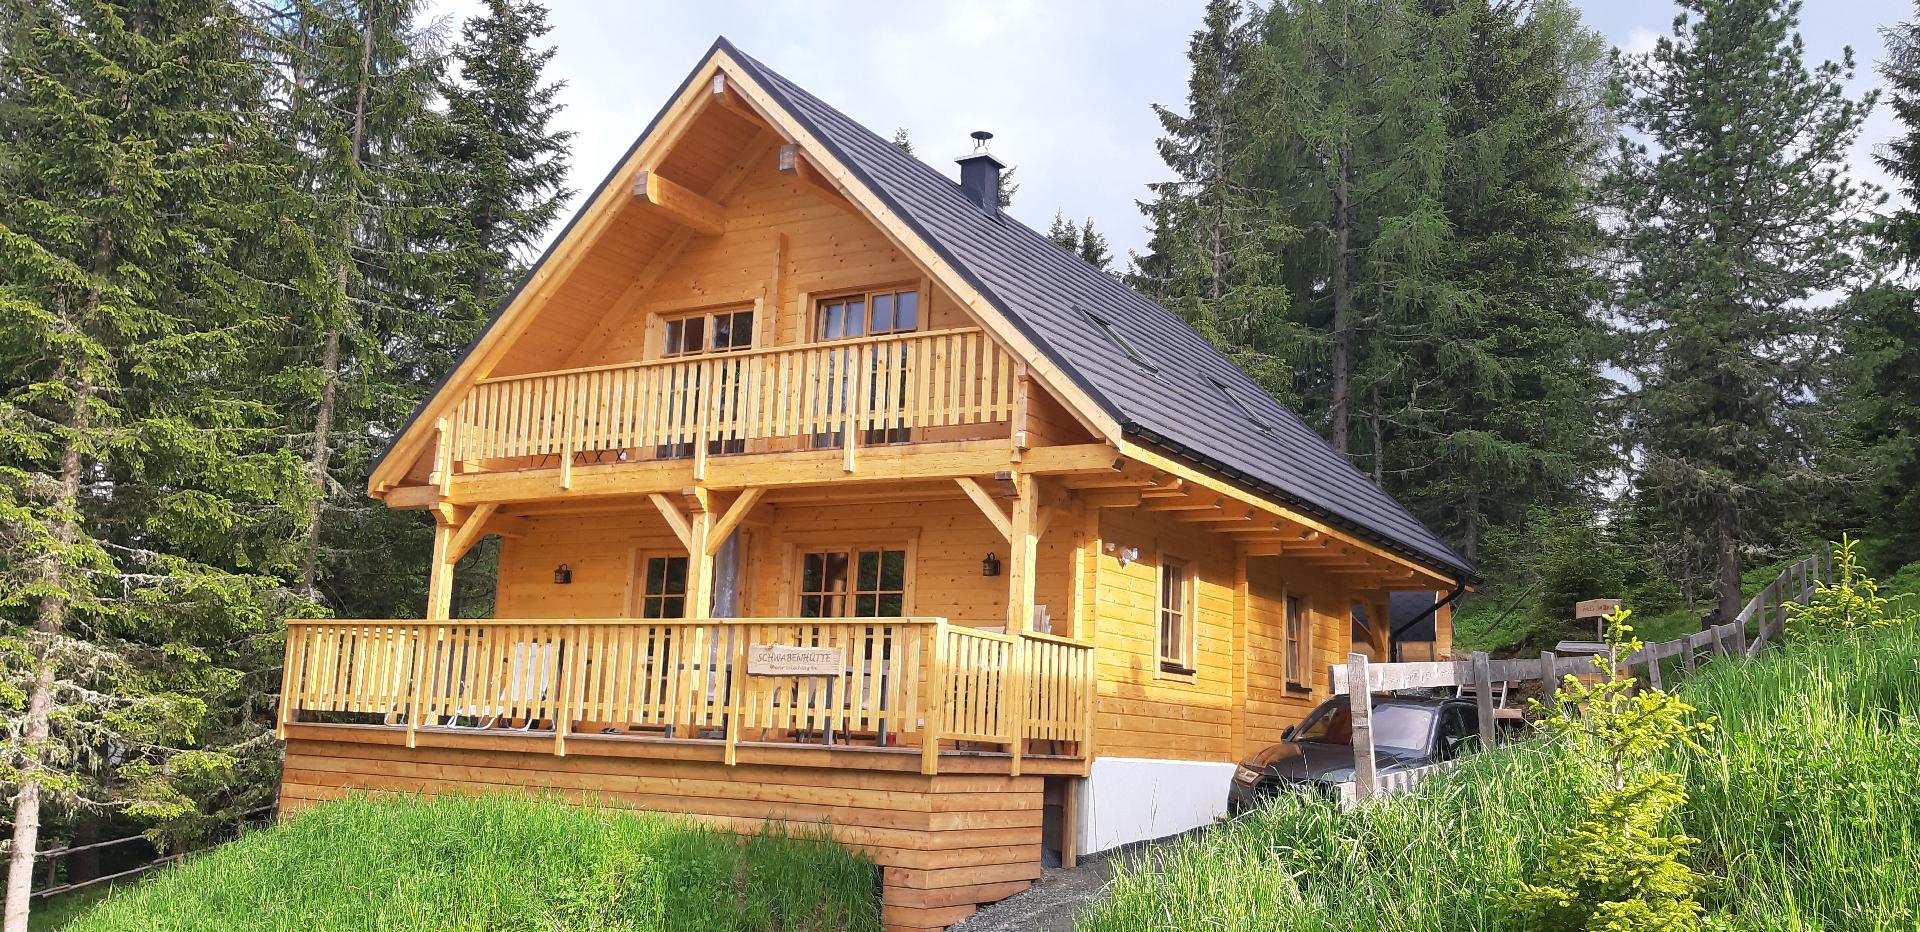 Gemütliches Holzhaus Schwabenhütte auf d Ferienhaus in Österreich